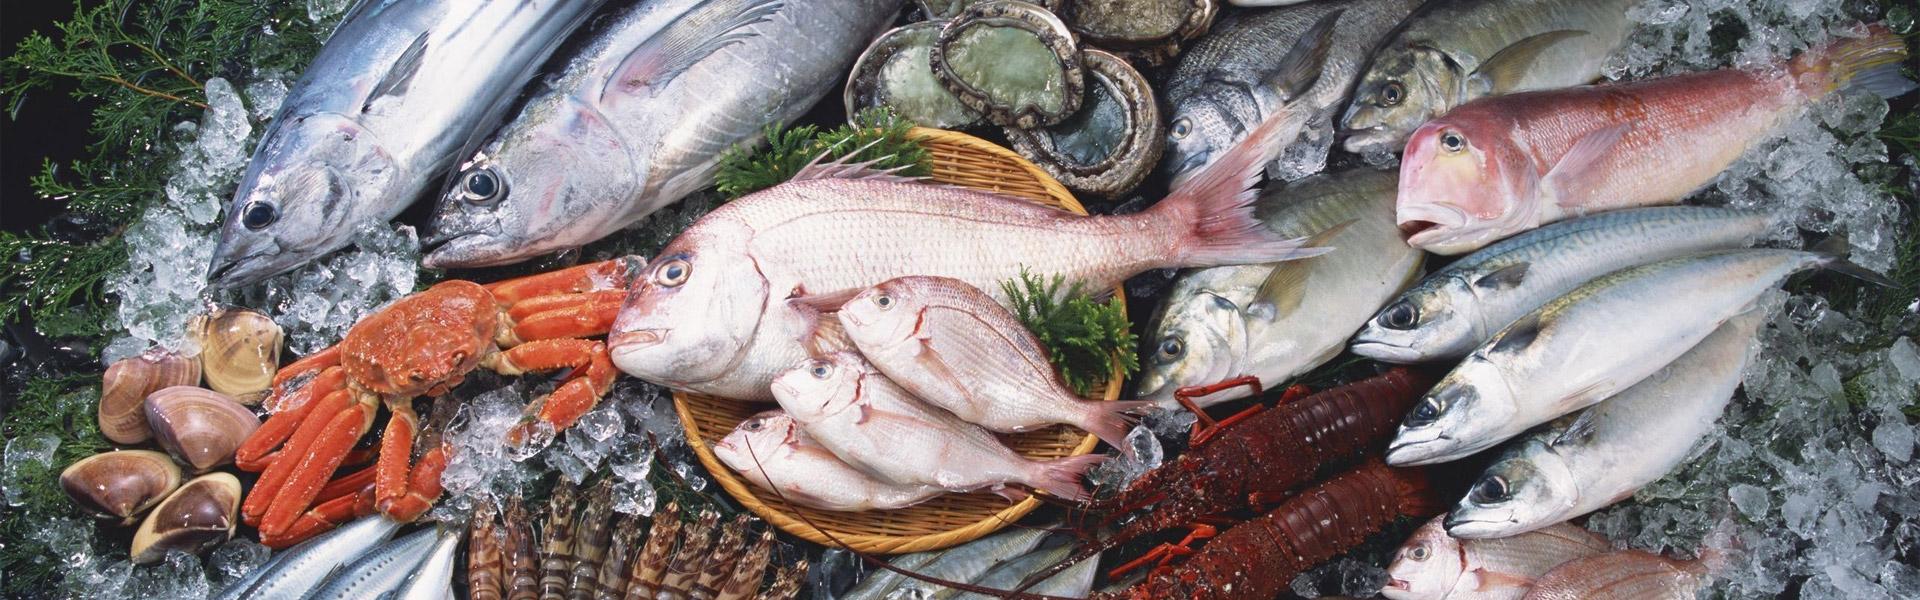 Купить свежую рыбу с доставкой. Рыбная продукция. Рыбные продукты. Свежая рыба. Свежая рыба и морепродукты.